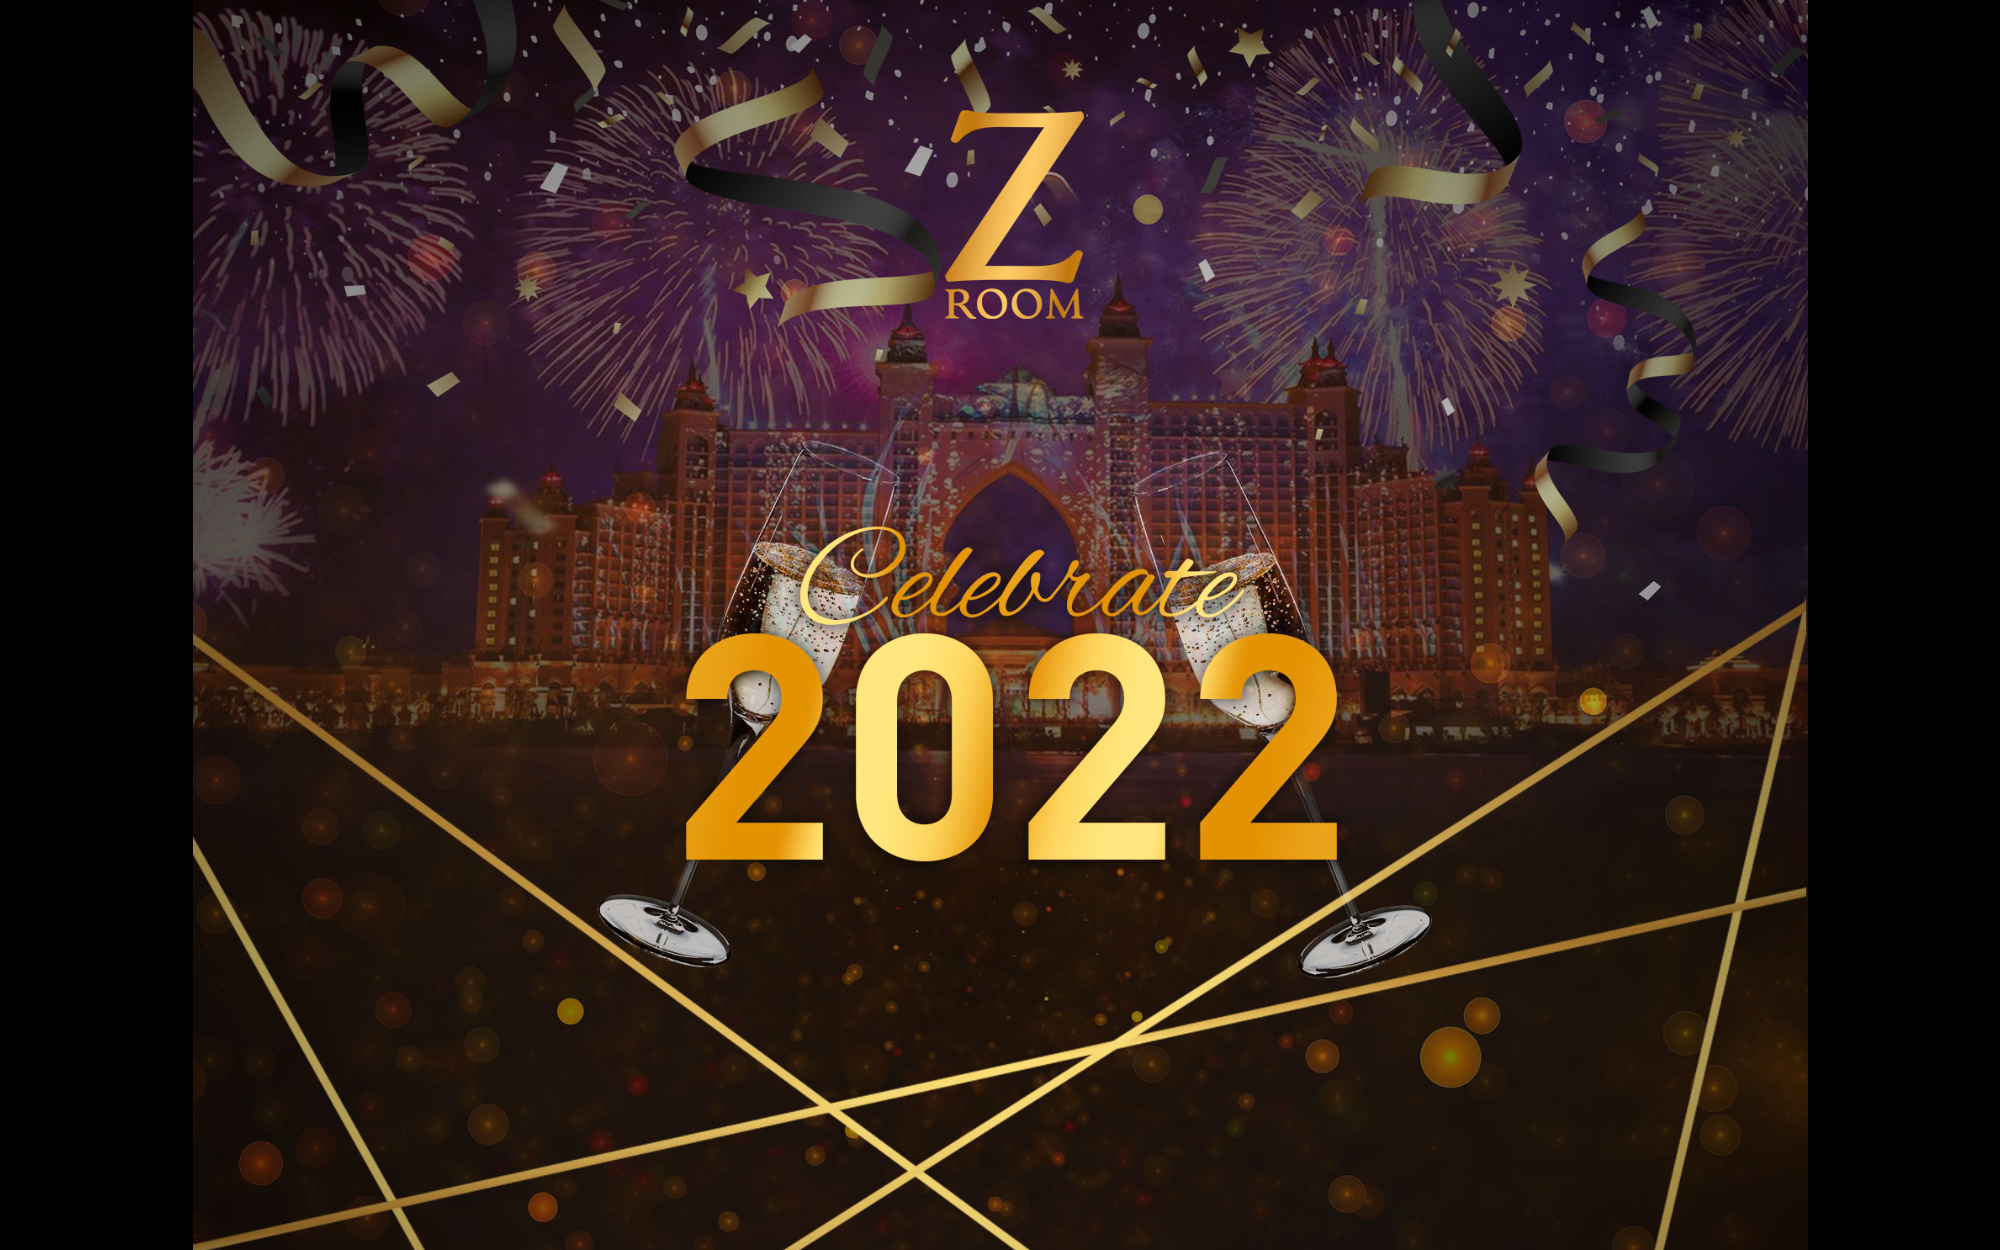 Celebrate 2022 at ZRoom